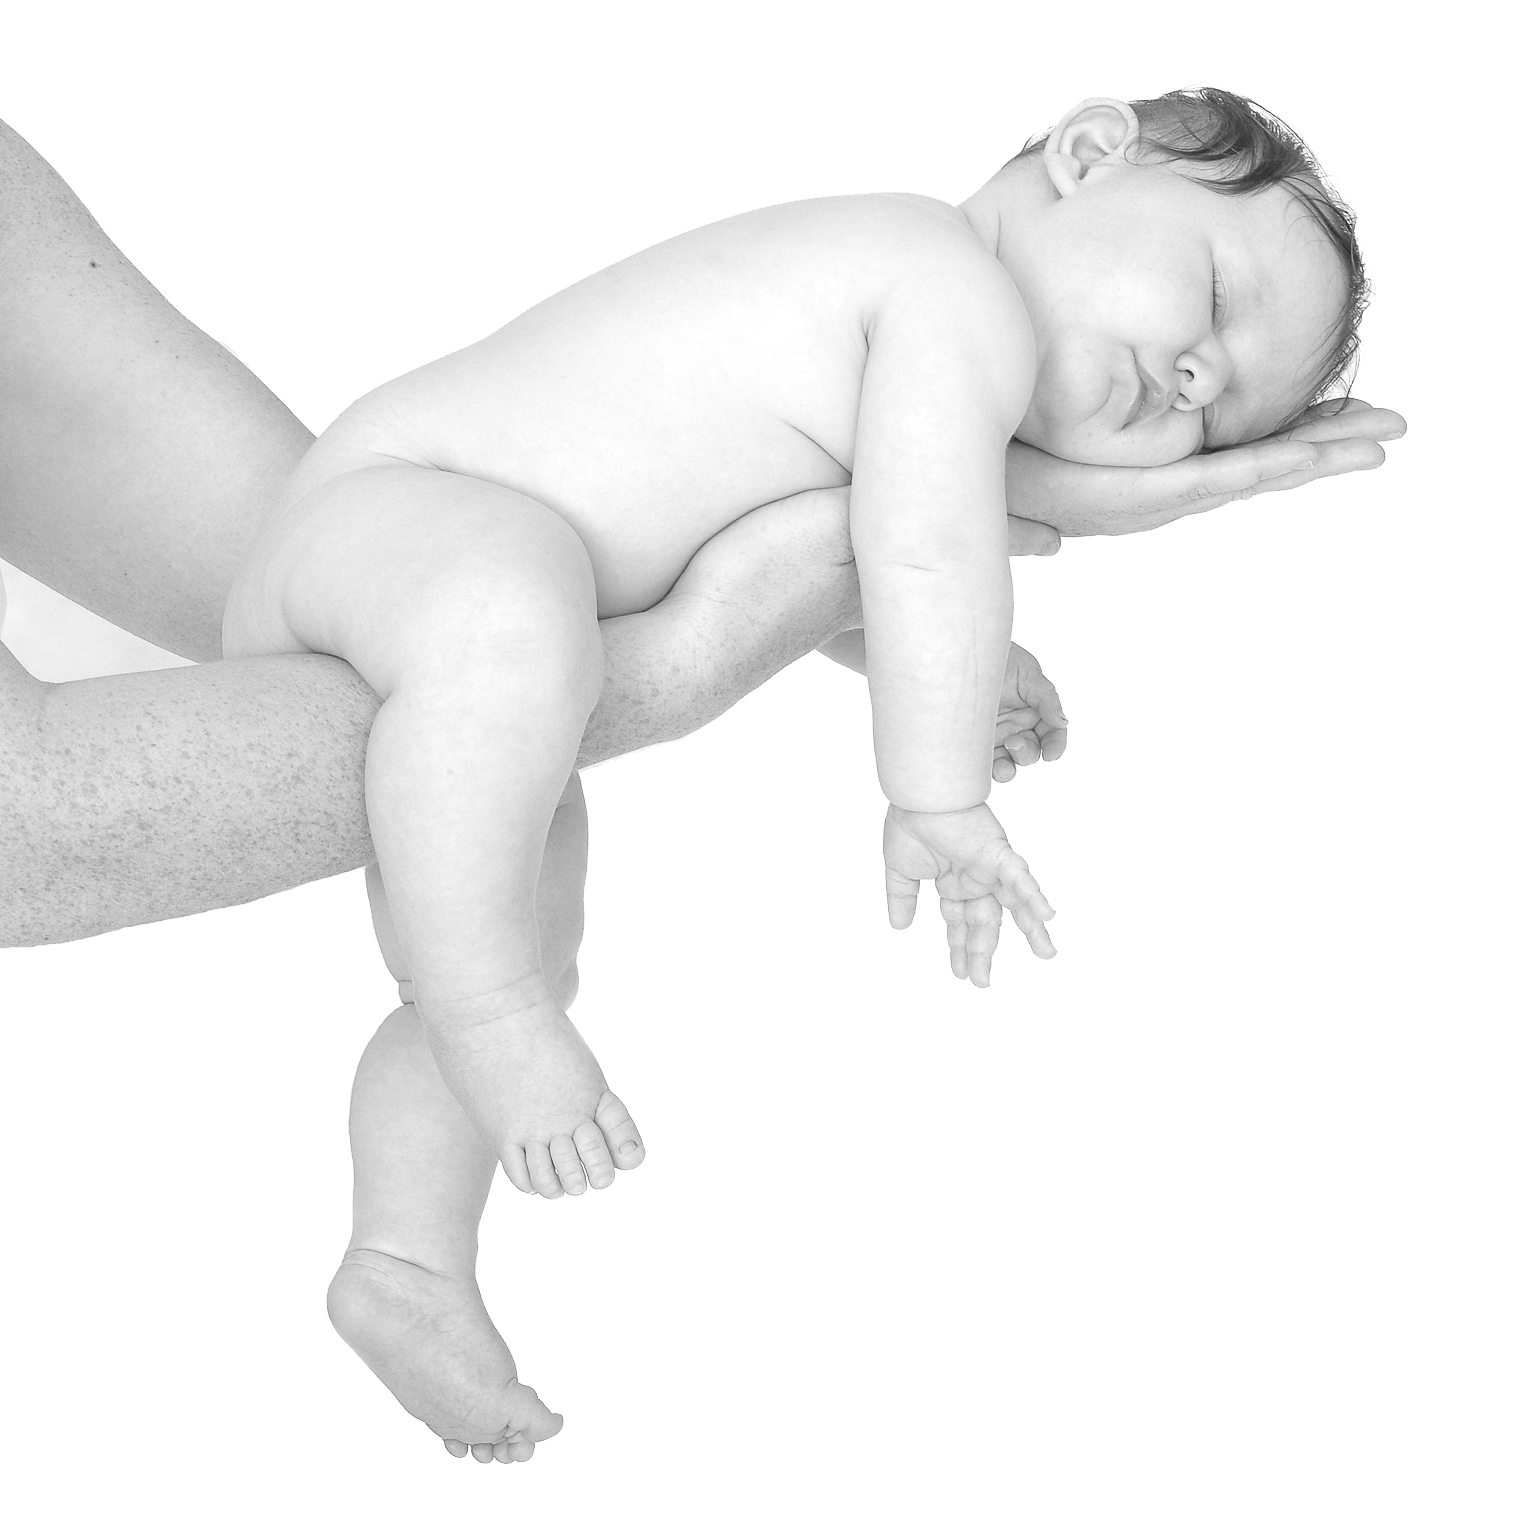 Babyfotograf Babyshooting Babyfotografie Neugeborenenfotograf Neugeborenenfotoshooting